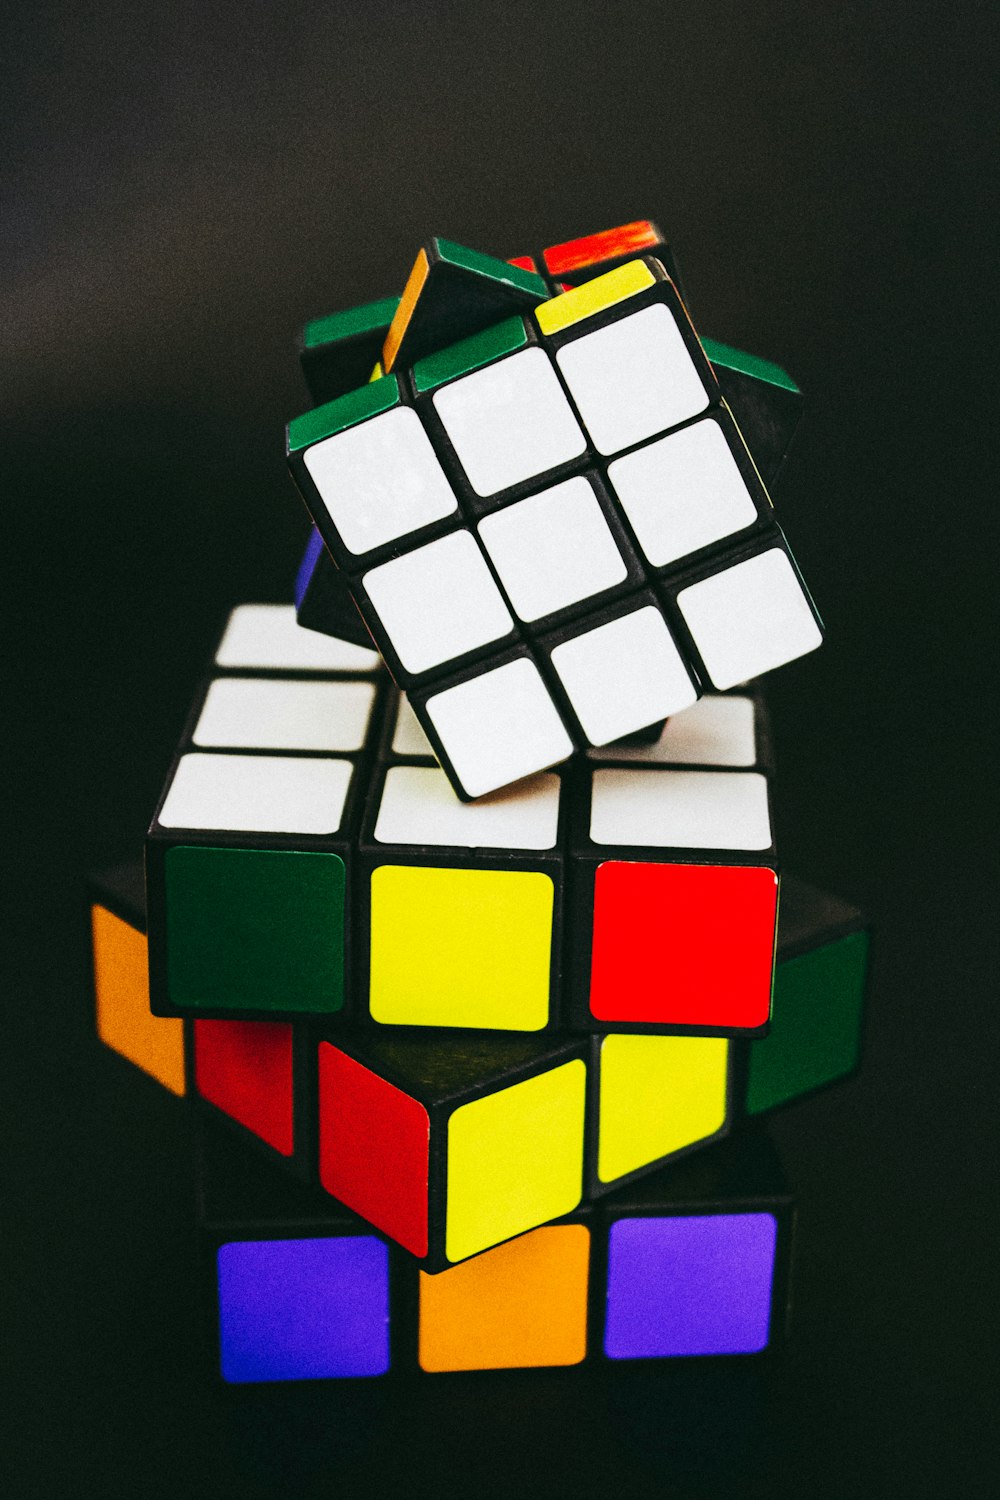 3 X 3 Rubiks Cube Photo Free Image On Unsplash